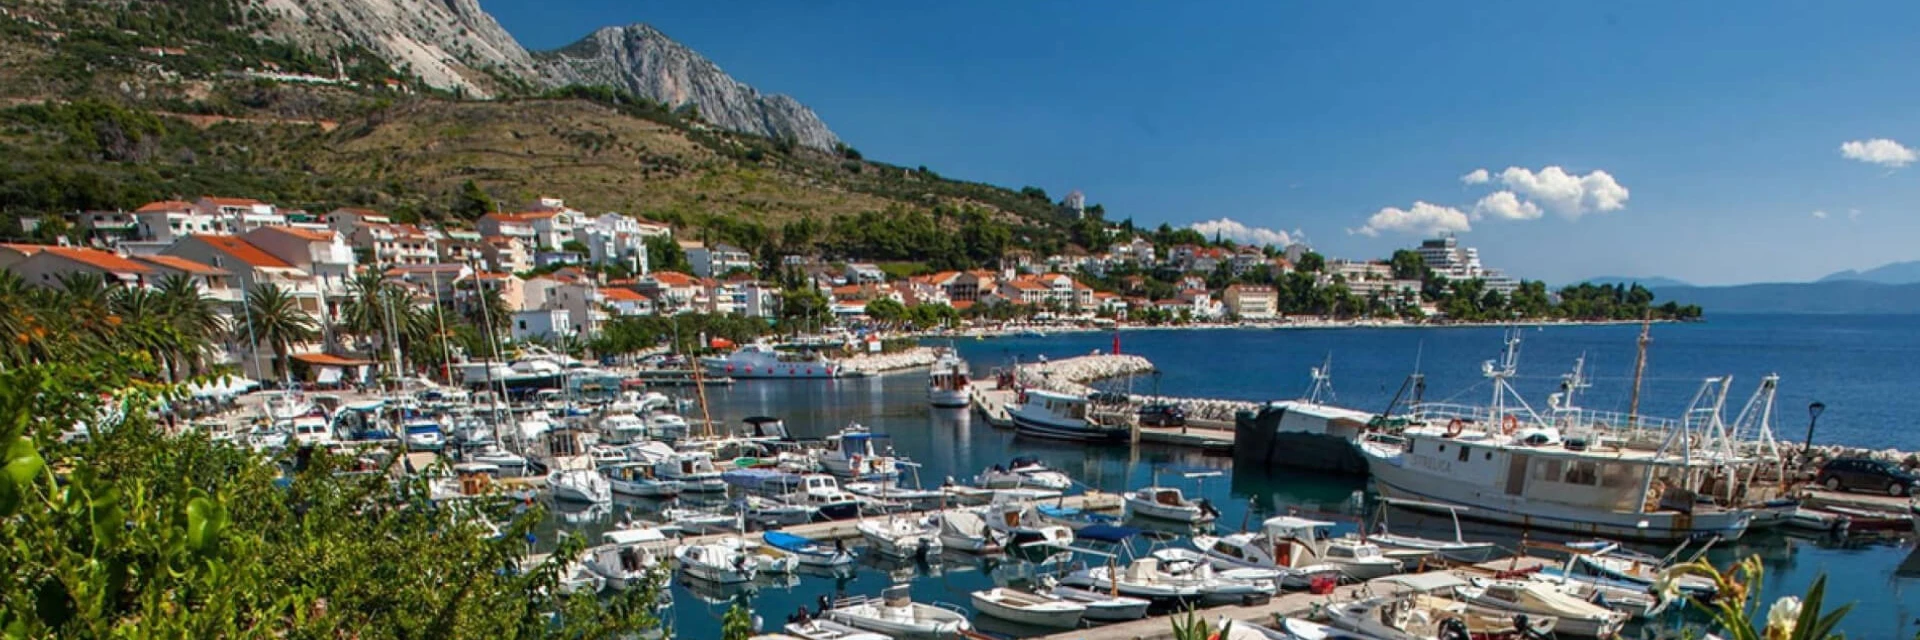 Sehenswürdigkeiten und Unternehmungen an der Makarska Riviera